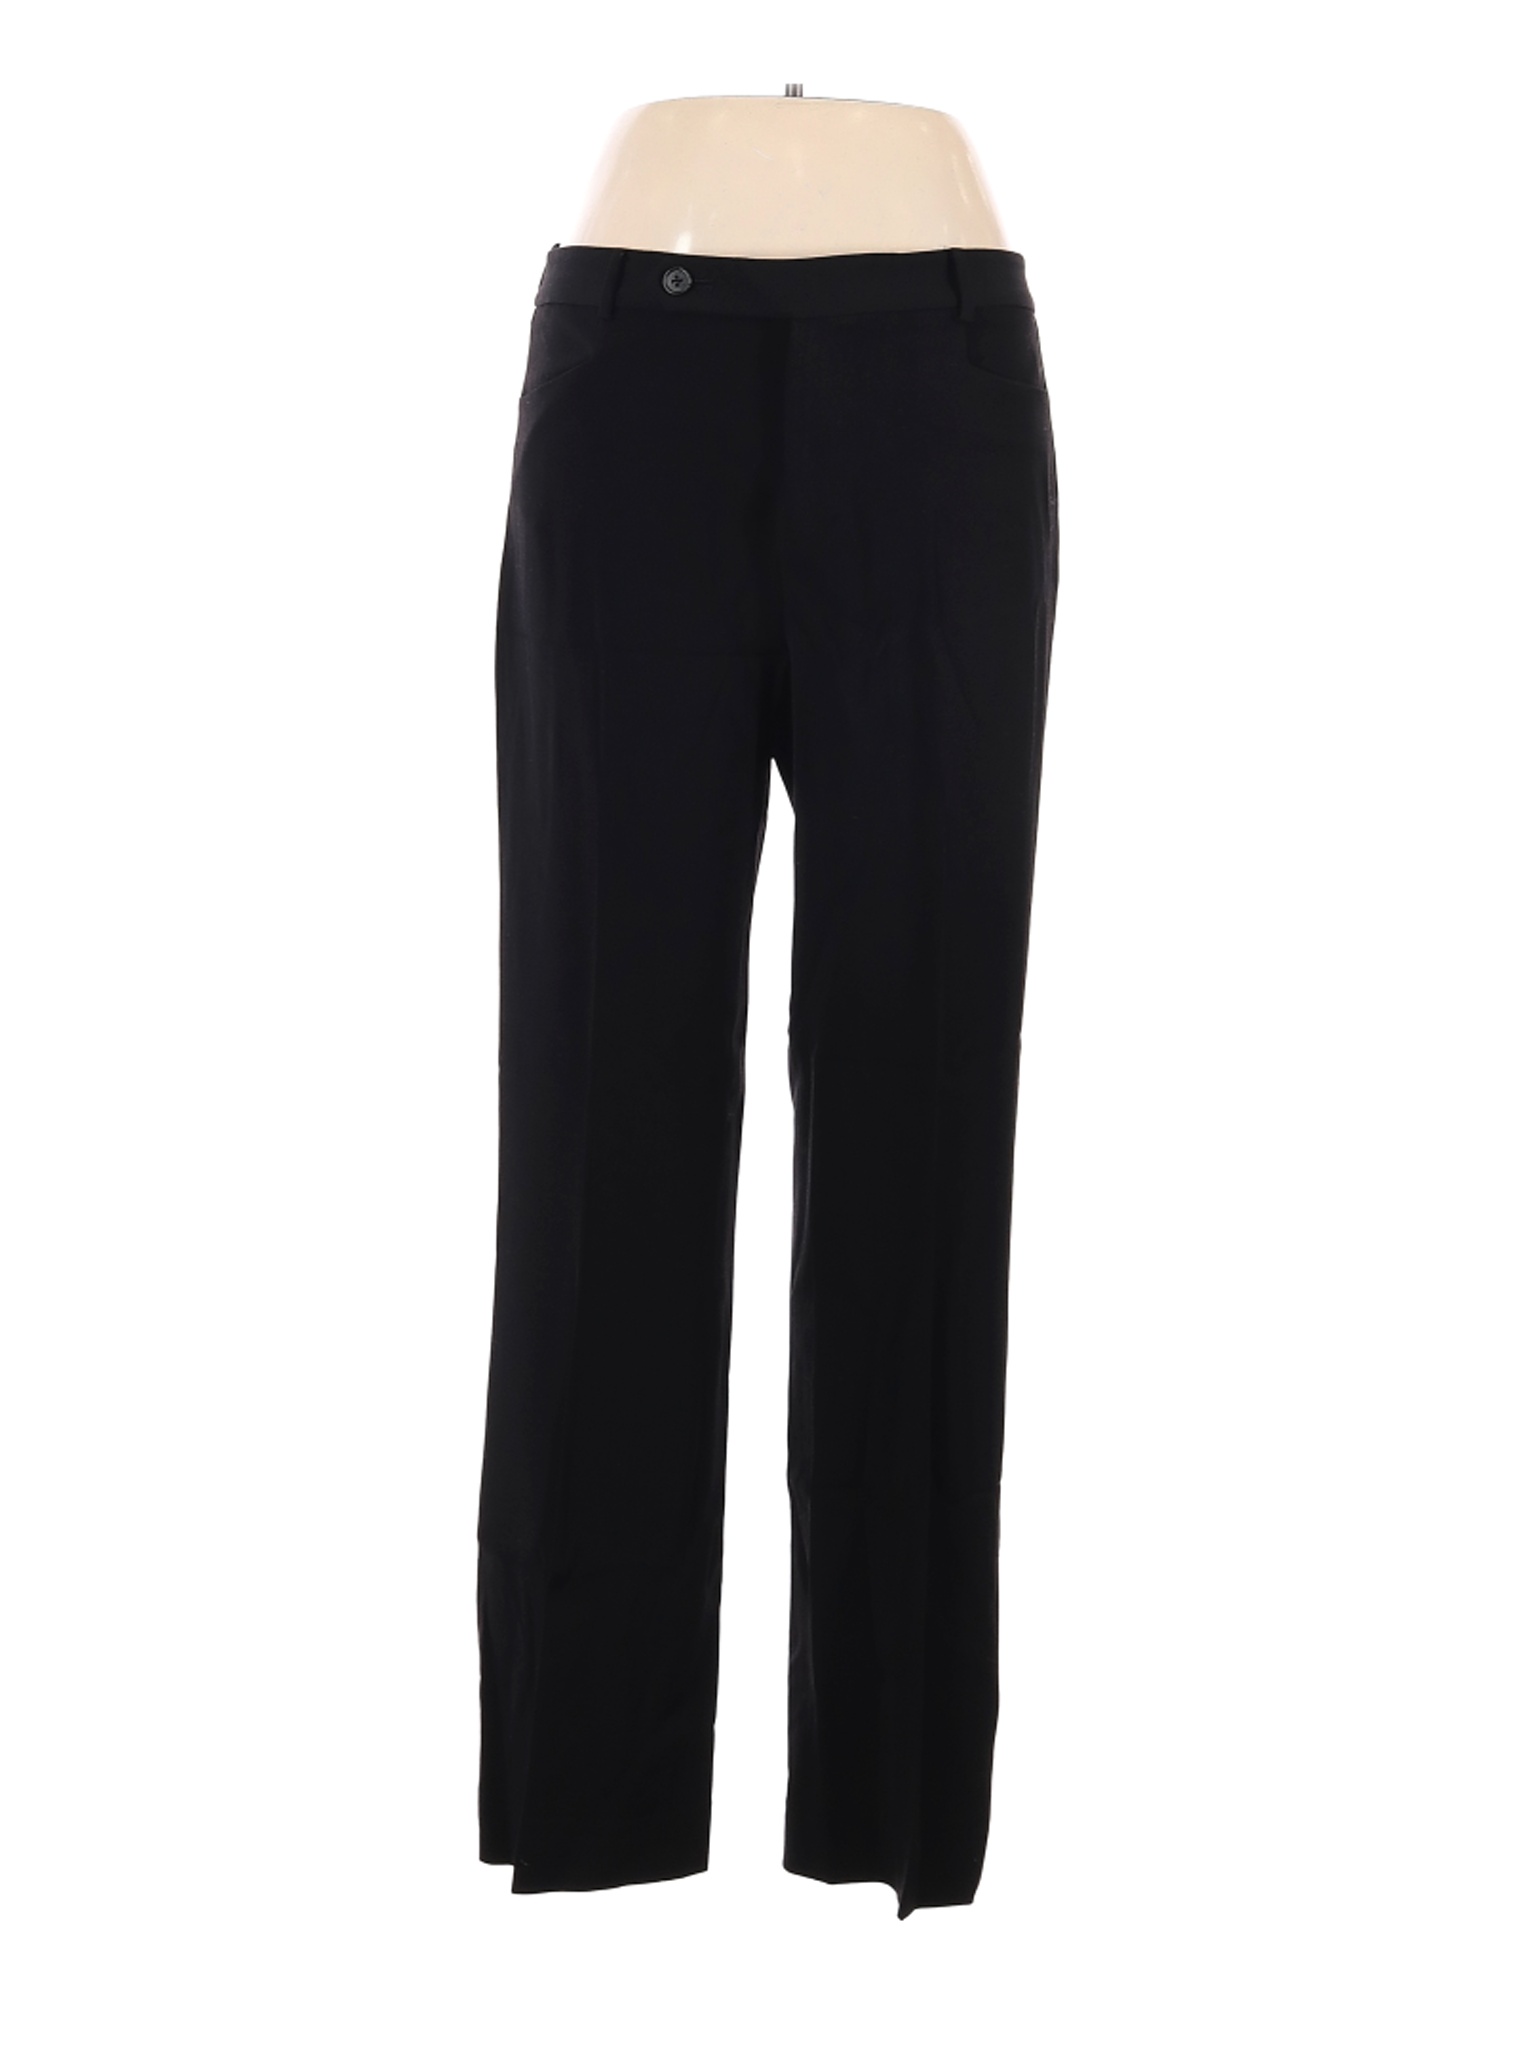 Lauren by Ralph Lauren Women Black Wool Pants 10 | eBay